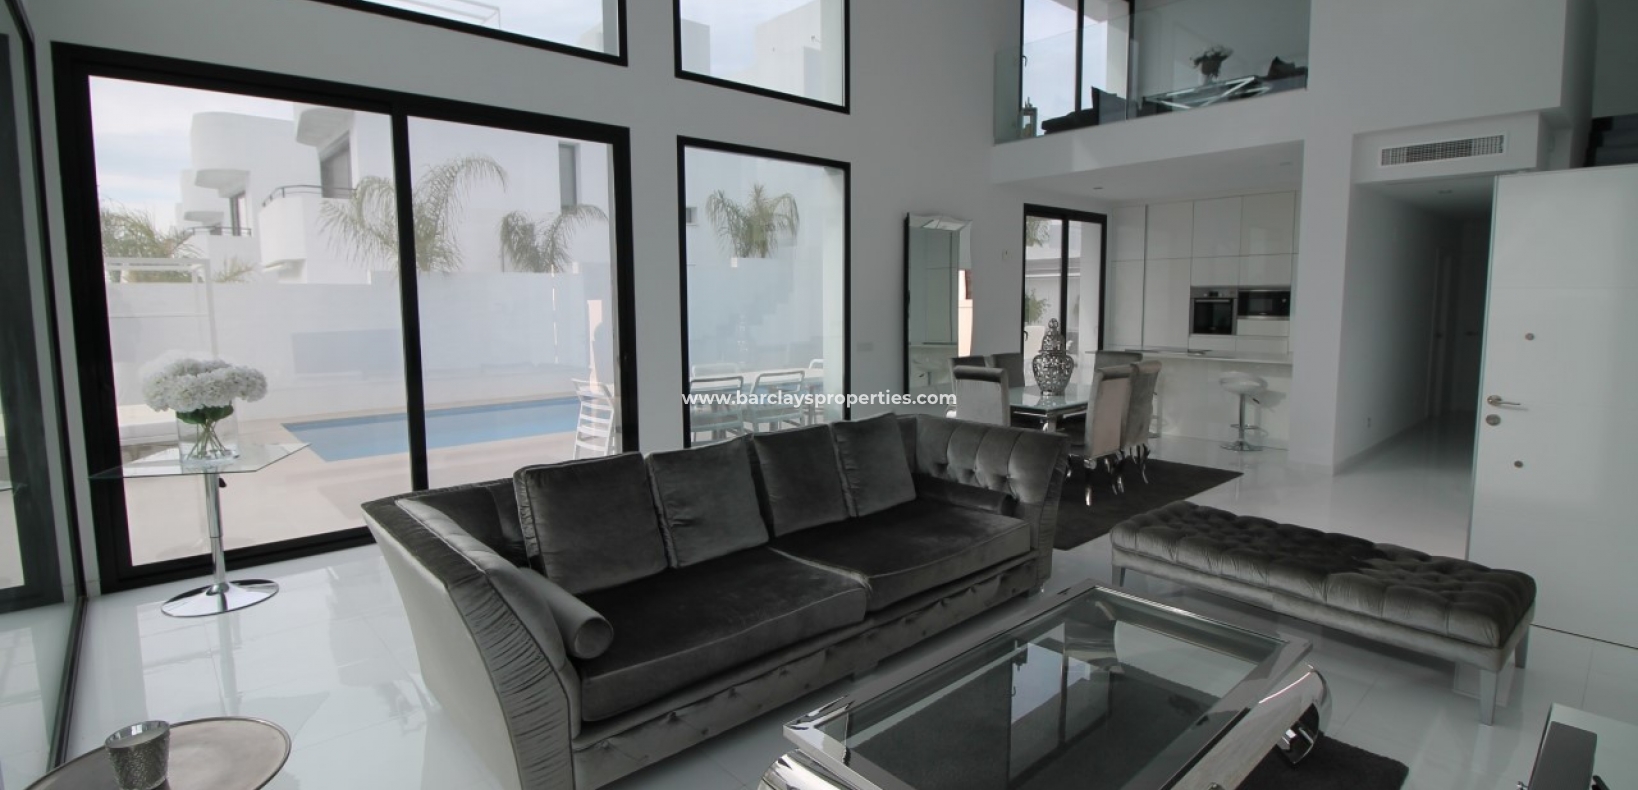 Living Room - Modern villa for sale in urbanisation La Marina